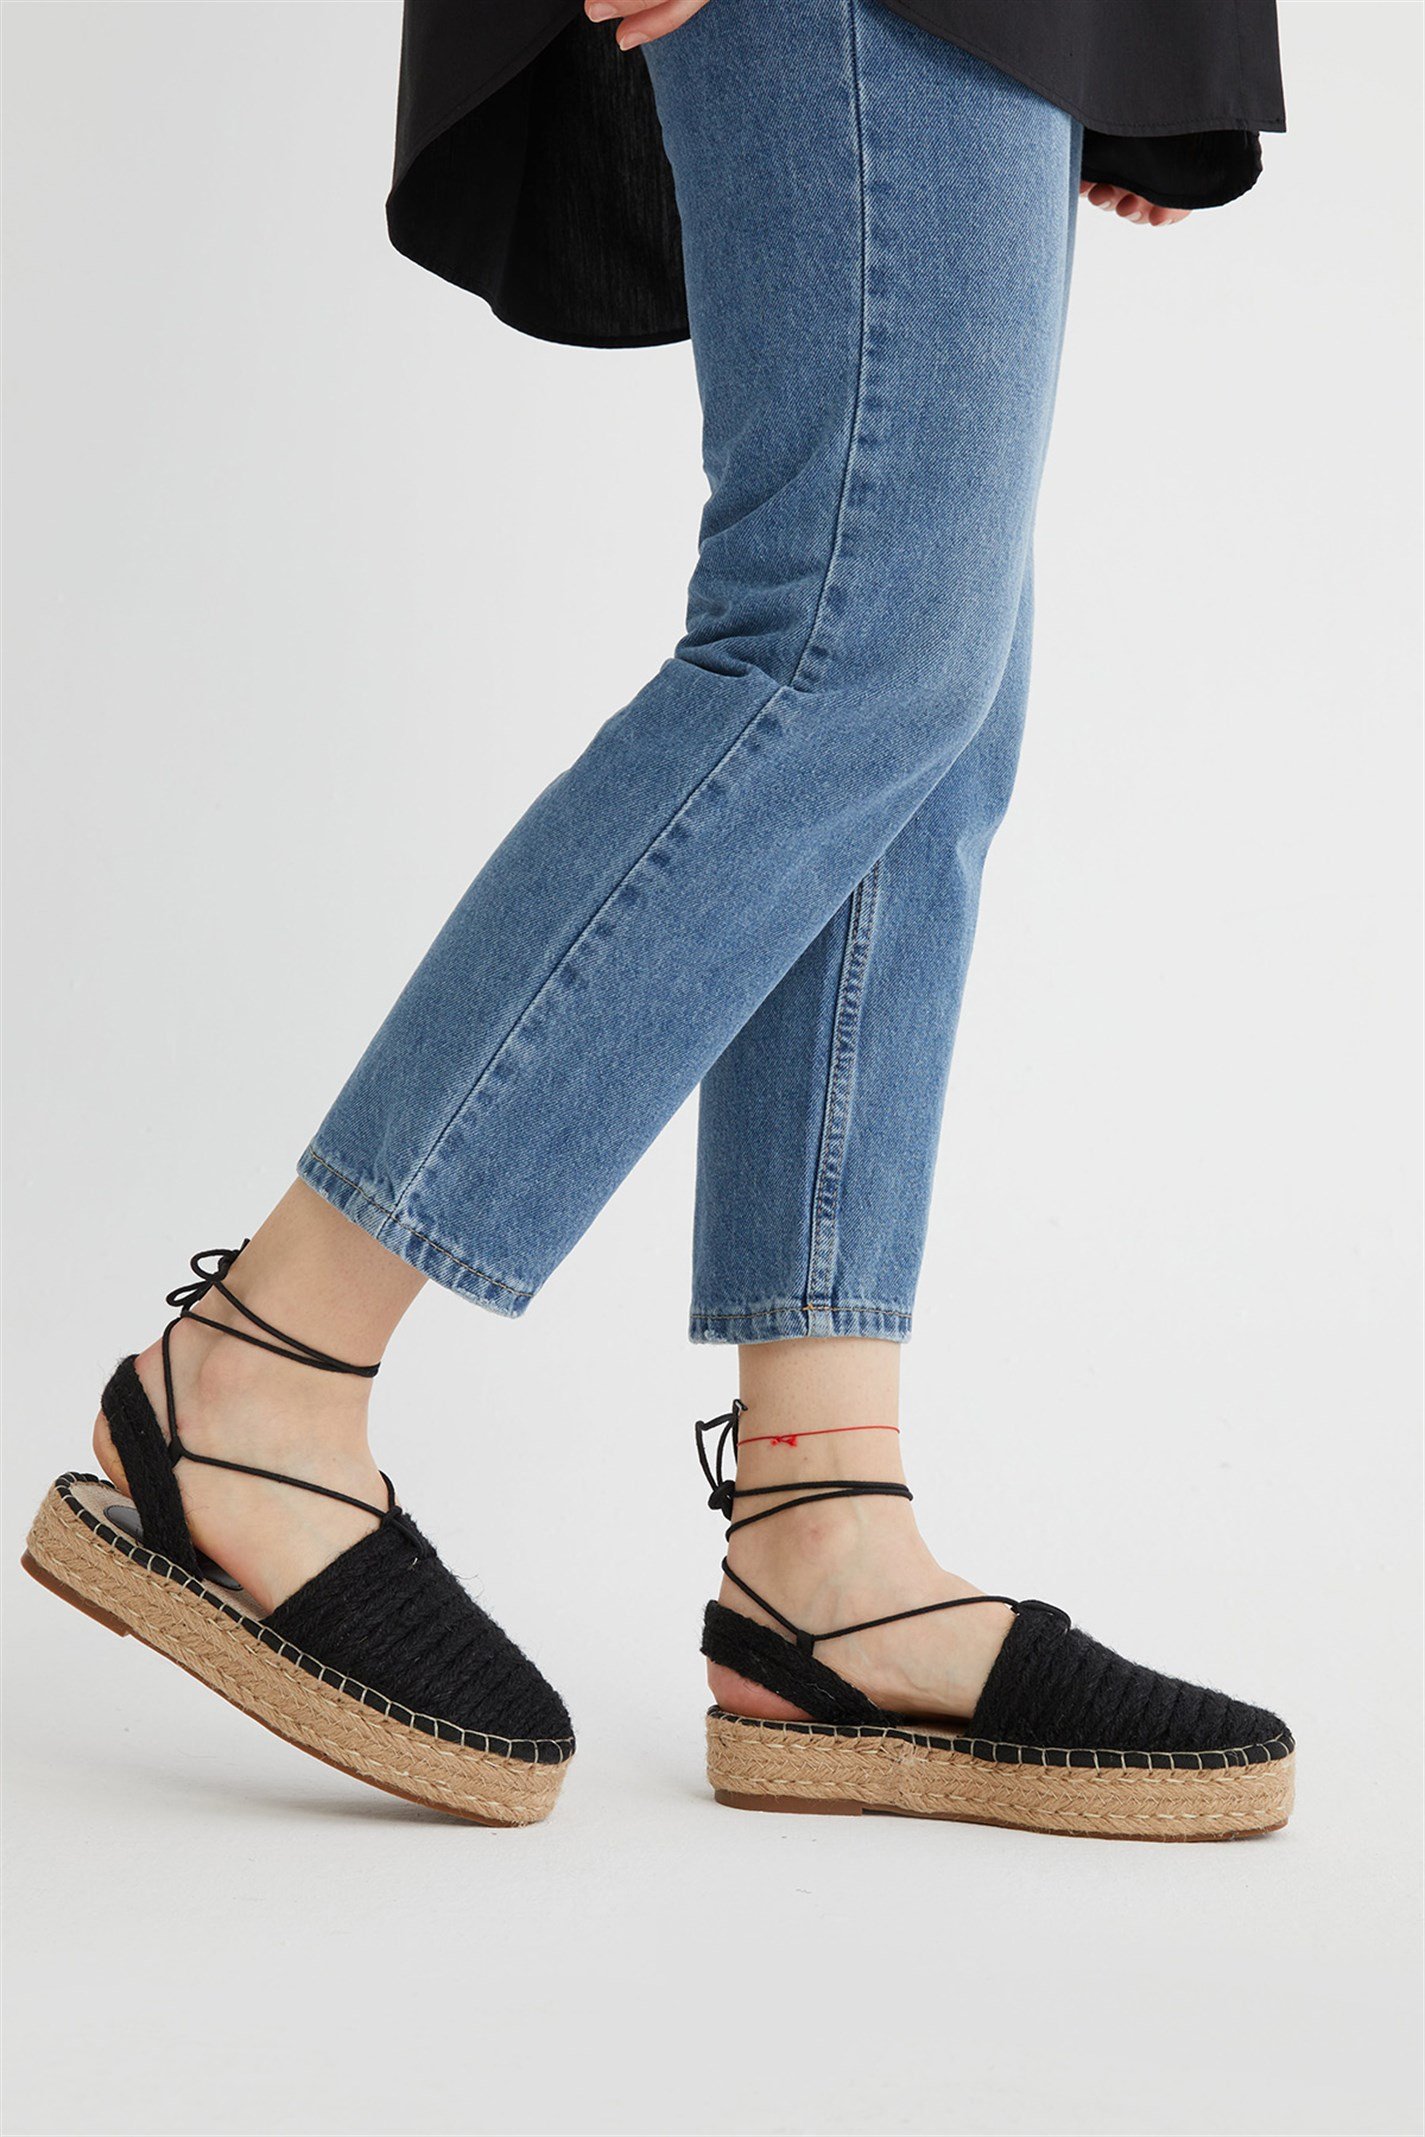 Siyah Bağlamalı Hasır Sandalet | Suud Collection